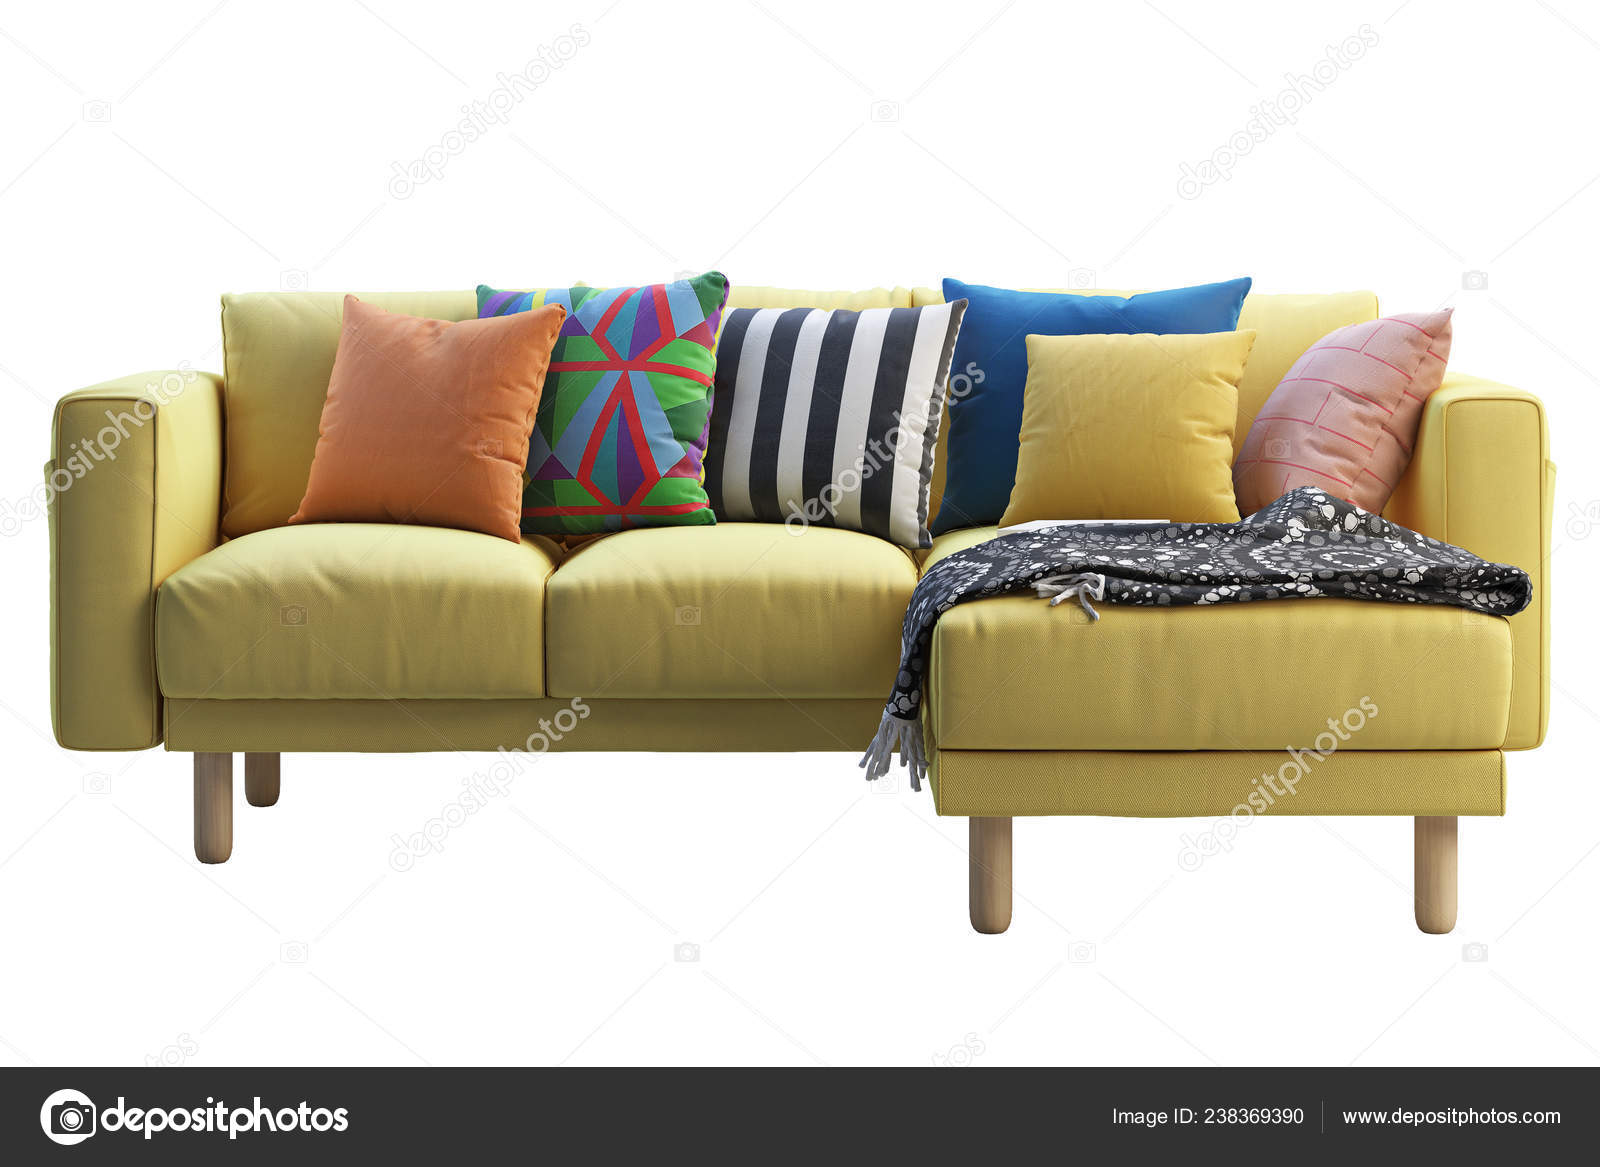 Yellow and White Plaid Sofa